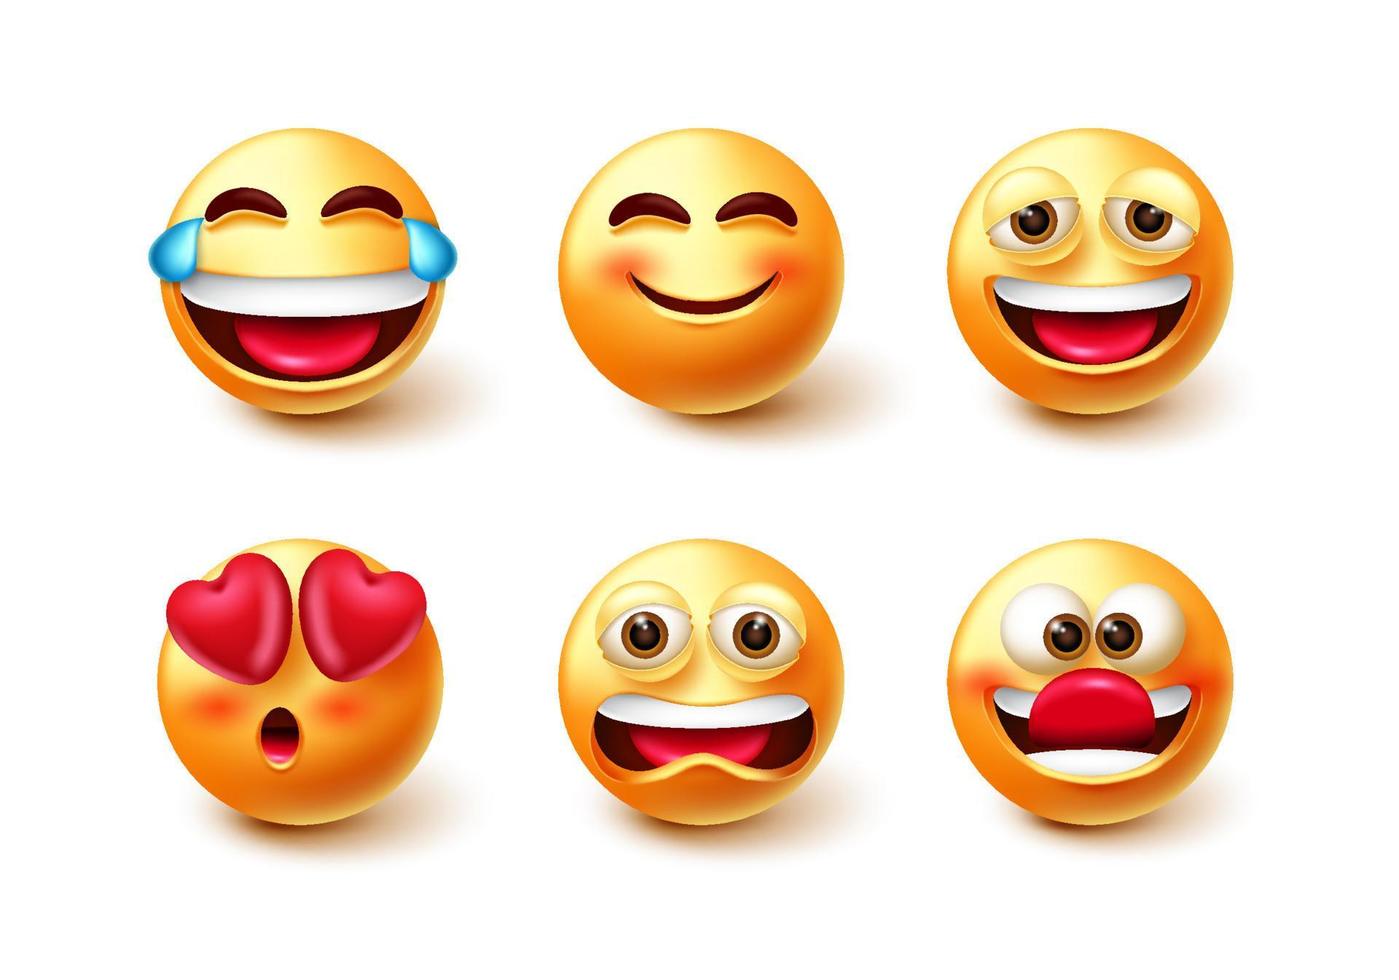 emoji tekens vector set. emoticon 3D-pictogram met lachen, glimlachen, grappig en boos stemming gezichtsuitdrukkingen geïsoleerd op een witte achtergrond voor karakter emoticons collectie design.